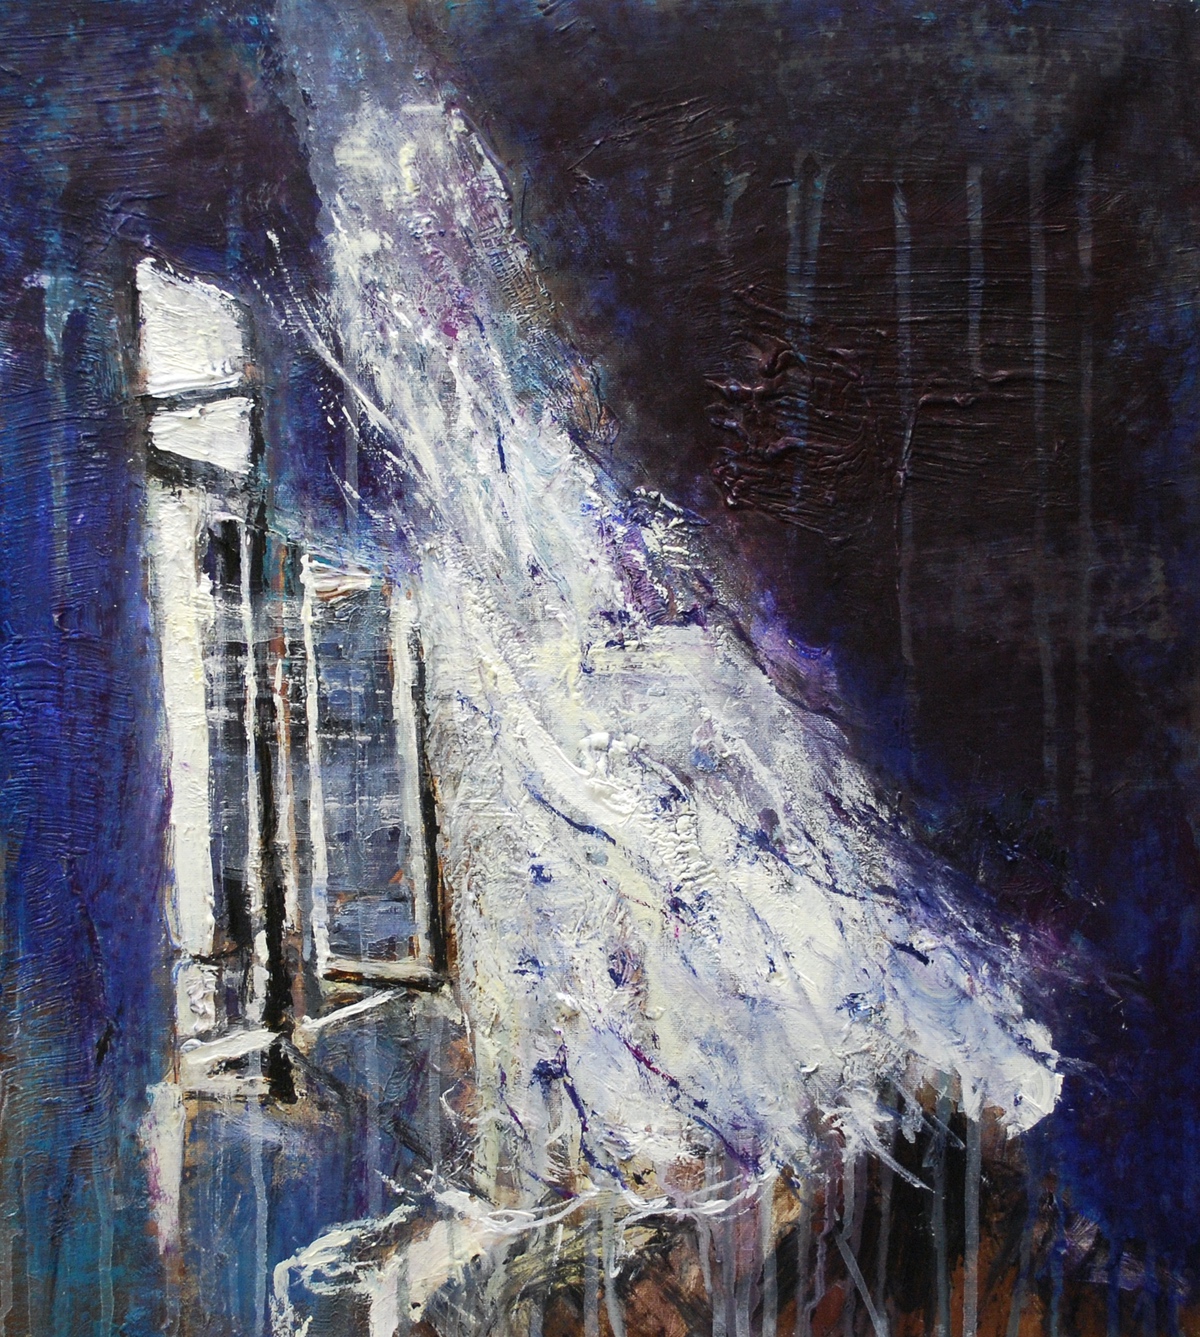 “Vinden”, 2011, 45 x 40 cm. Akryl på lærred. (Carsten Frank nr. 1483) Sold